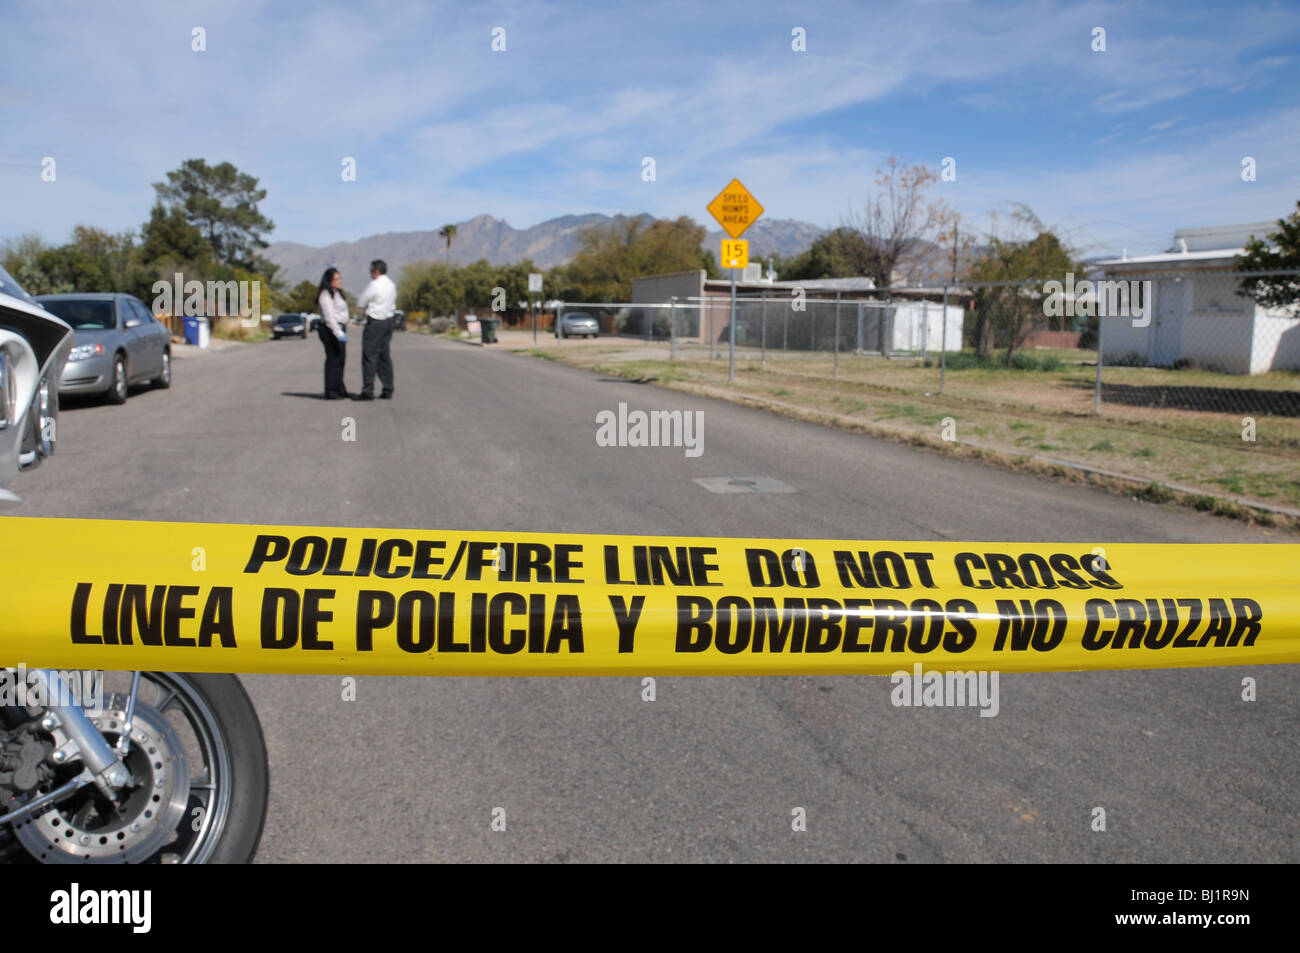 Tucson polizia indagare su un omicidio e la ripresa di un altro uomo ritiene di essere pista relative a Tucson, Arizona, Stati Uniti. Foto Stock